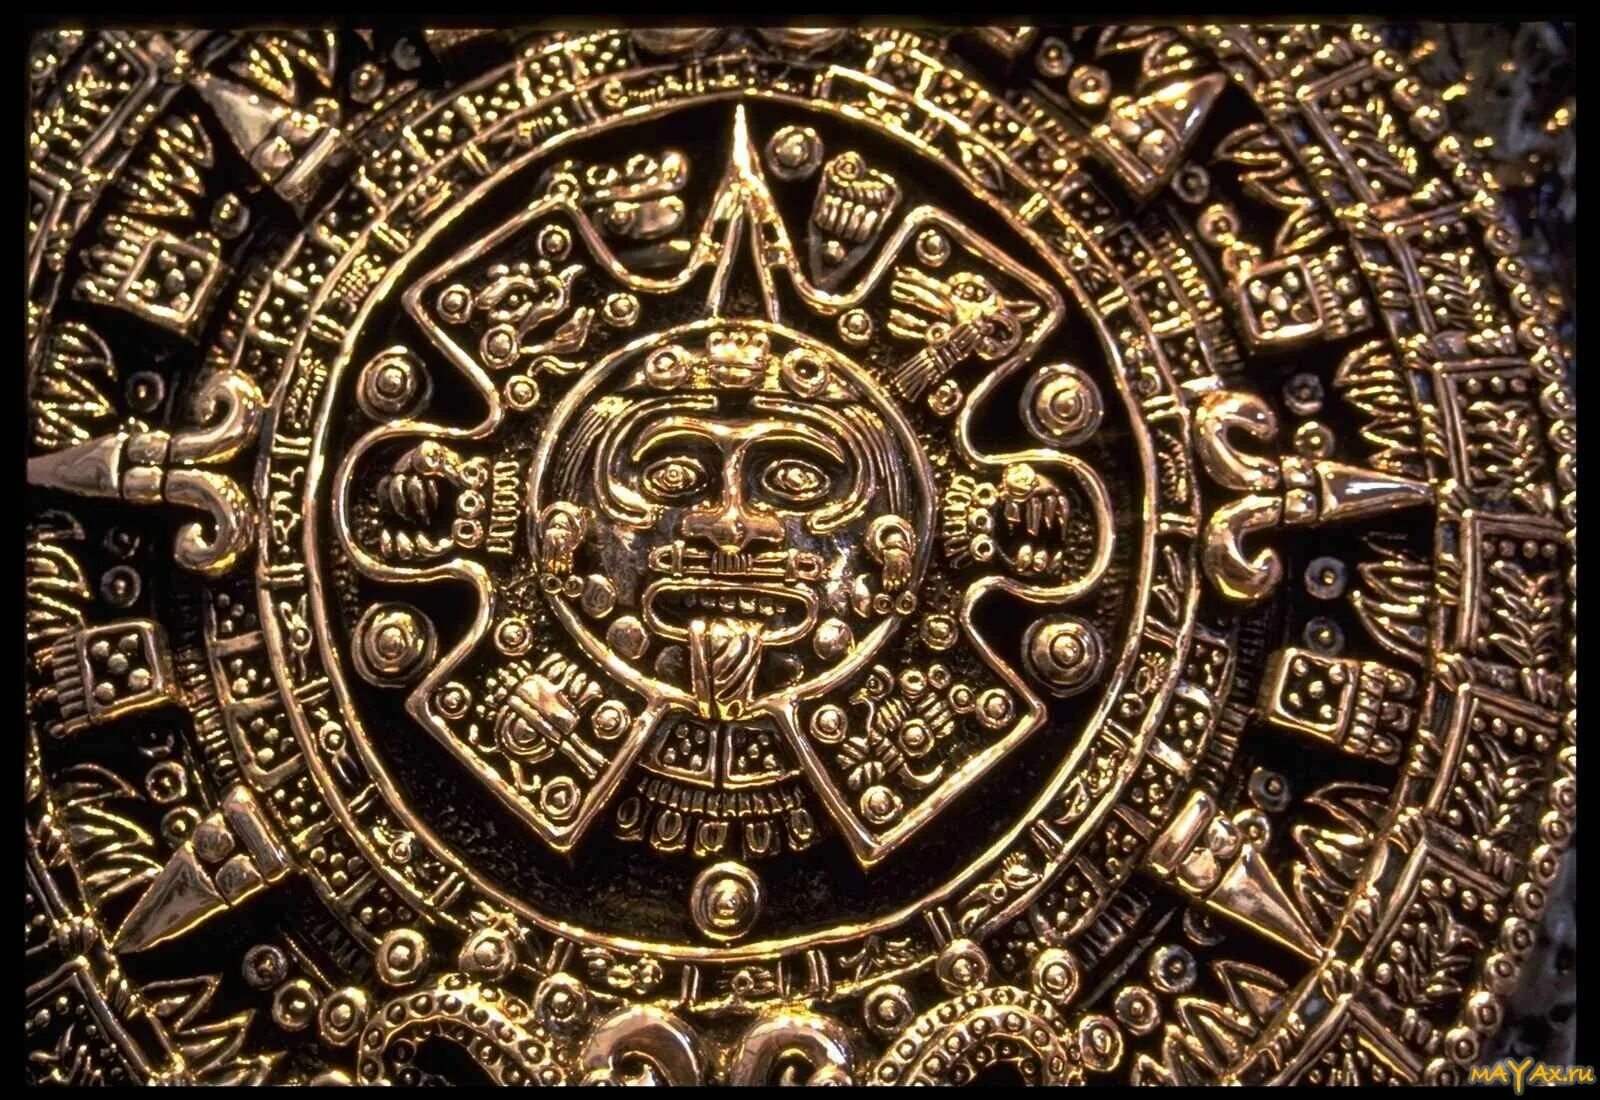 Календарь майя картинки. Золотые изделия инков ,Майя и ацтеков. Древняя цивилизация Майя. Украшения Майя ацтеков и инков. Индейцы Майя.